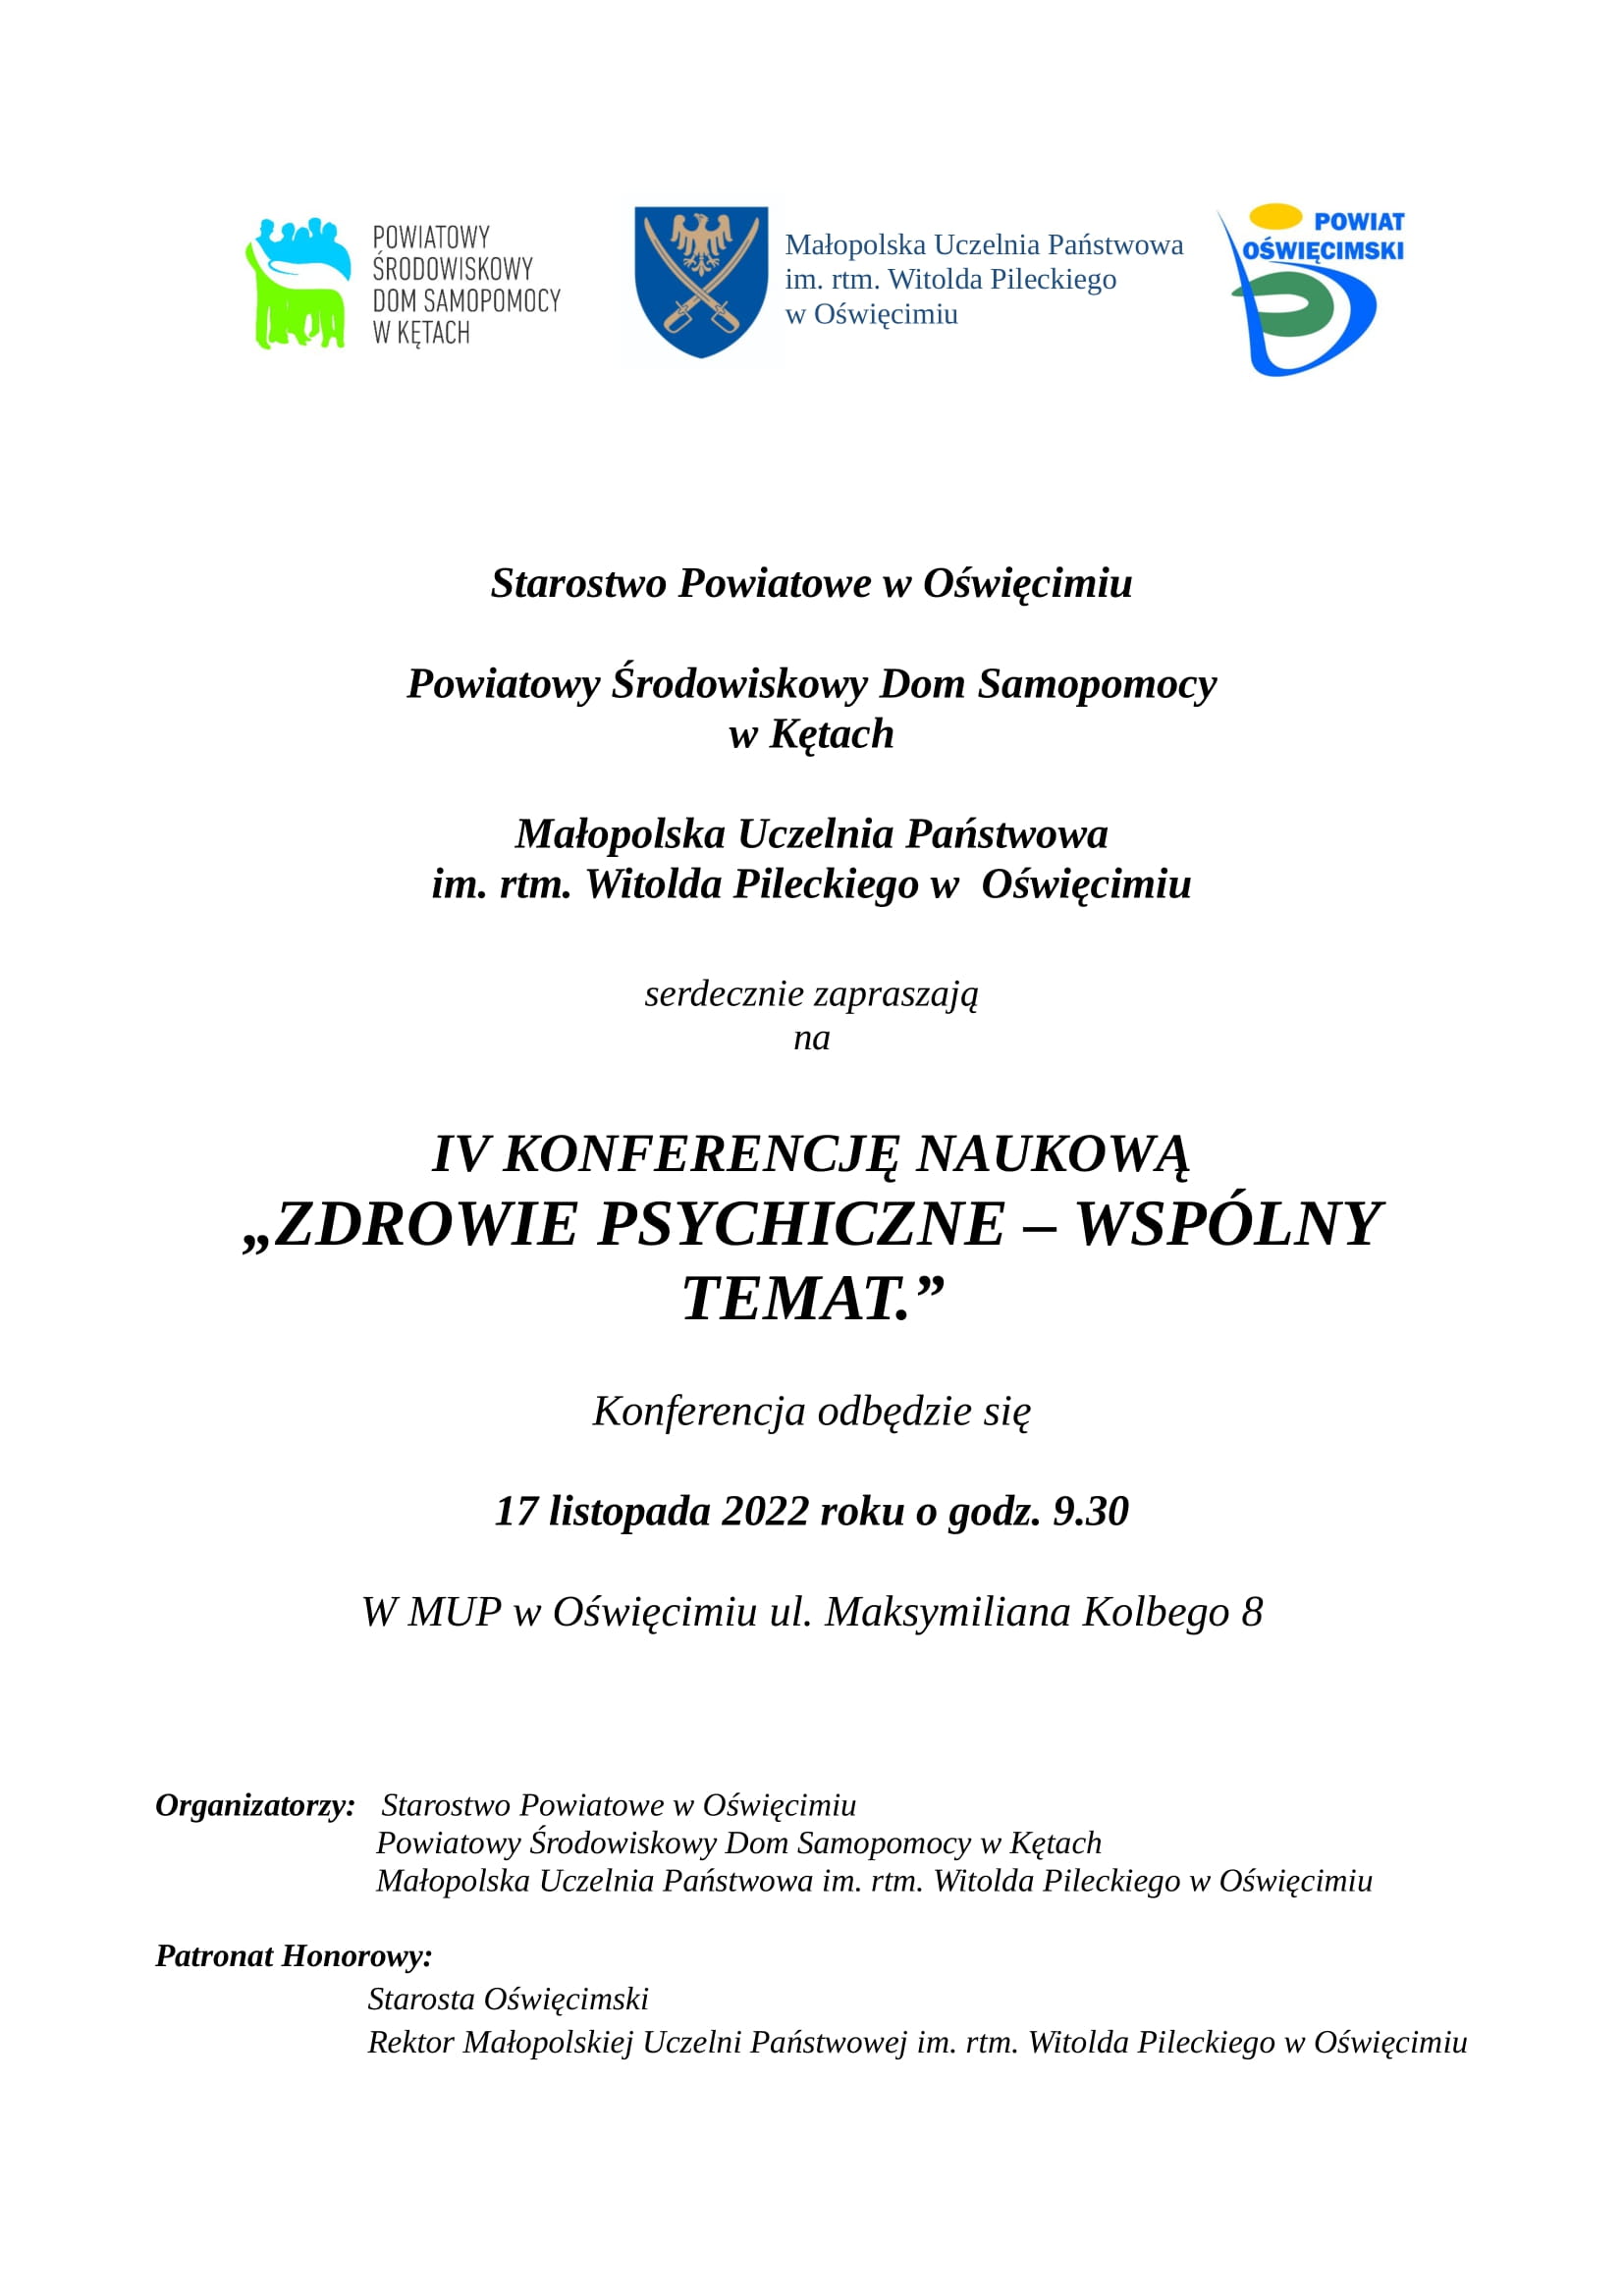 Konferencja naukowa o zdrowiu psychicznym (zapowiedź) powiat oswiecim pl info oswiecim info malopolska plakat-konferencja-2022-1